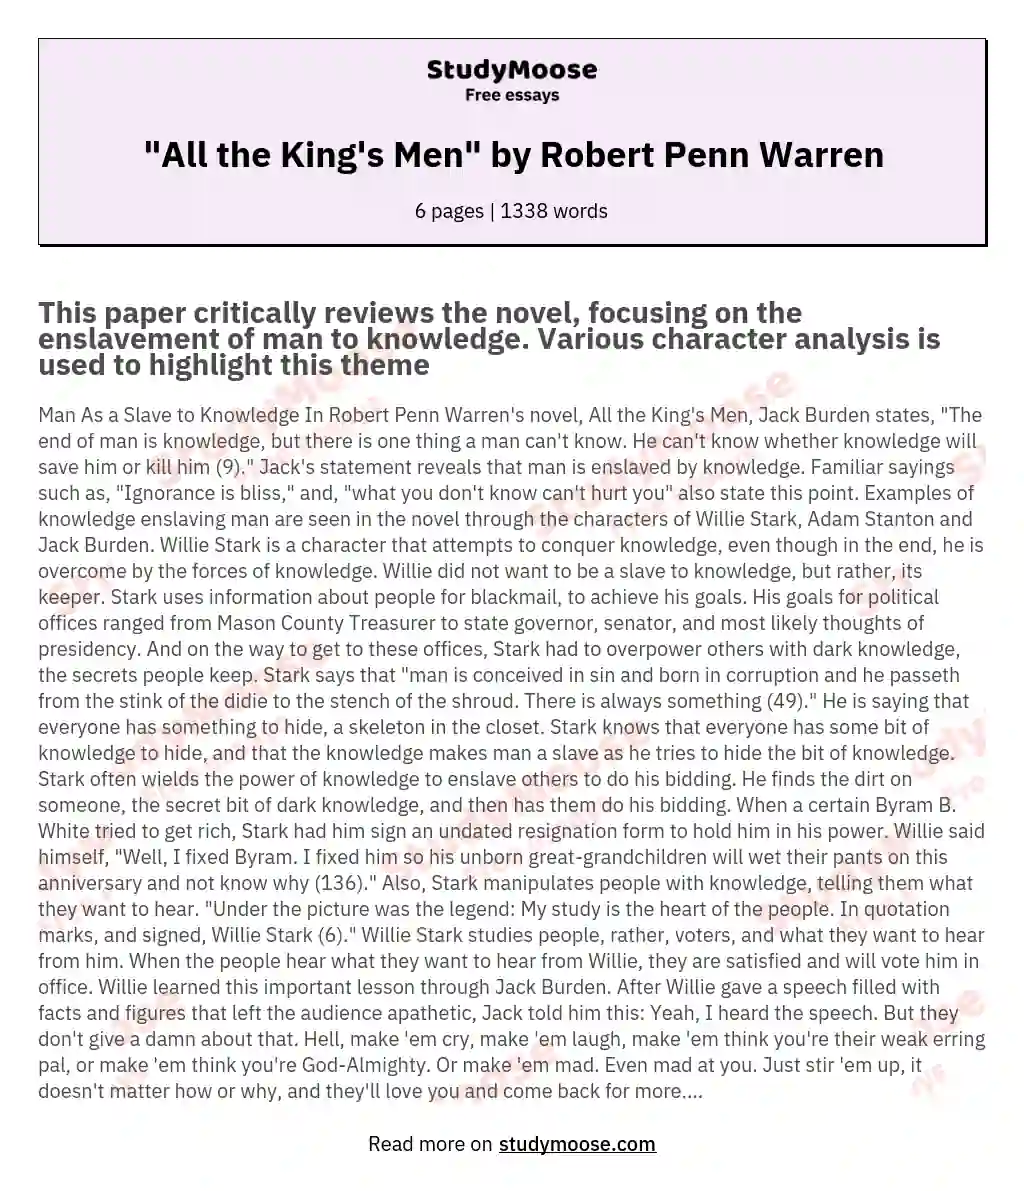 "All the King's Men" by Robert Penn Warren essay